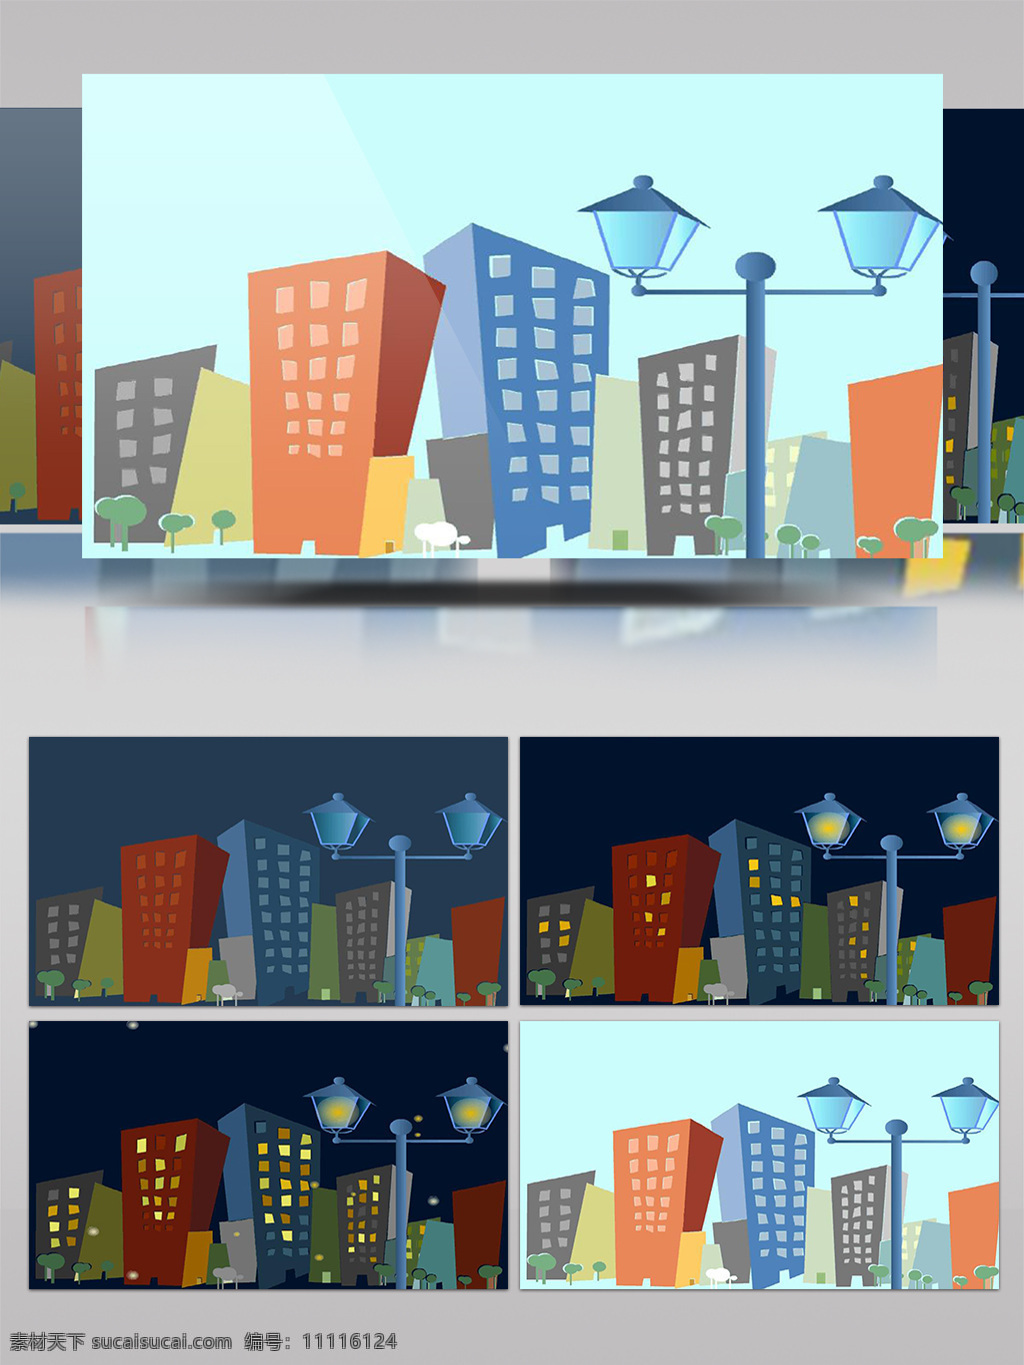 2018年 led 视频 mg动画 背景视频 城市建筑 动画片头 动态视频 卡通 卡通城市 卡通动画 卡通建筑 视频素材 小清新 楼房 城市 有音乐 夜晚